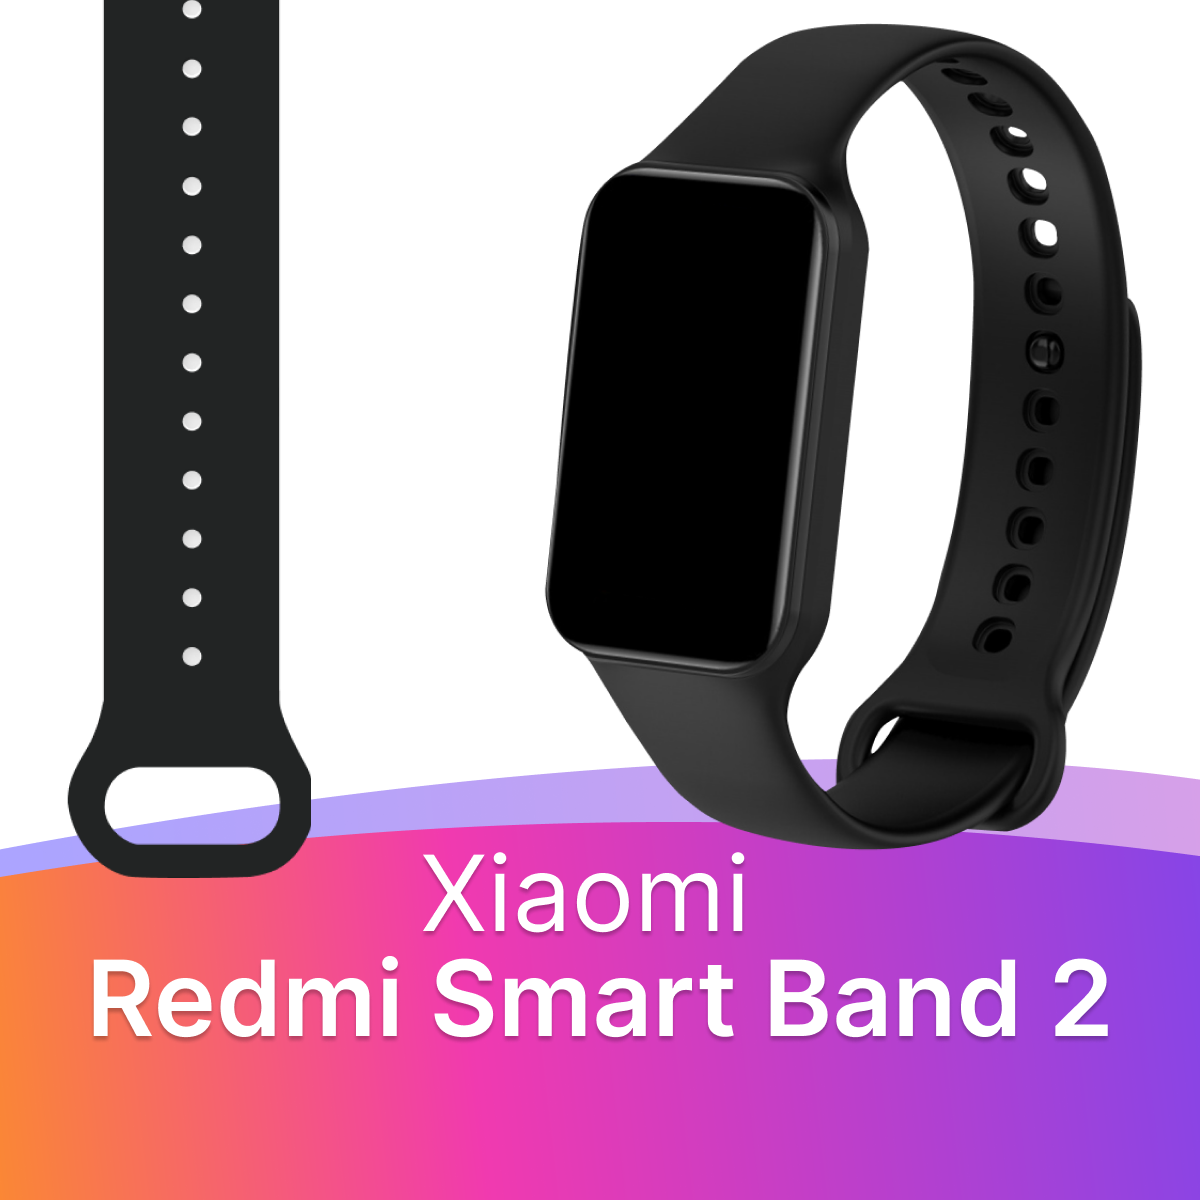 Силиконовый ремешок для фитнес браслета Xiaomi Redmi Smart Band 2 / Спортивный сменный ремешок для смарт часов Сяоми Редми Смарт Бэнд 2 (Чёрный)